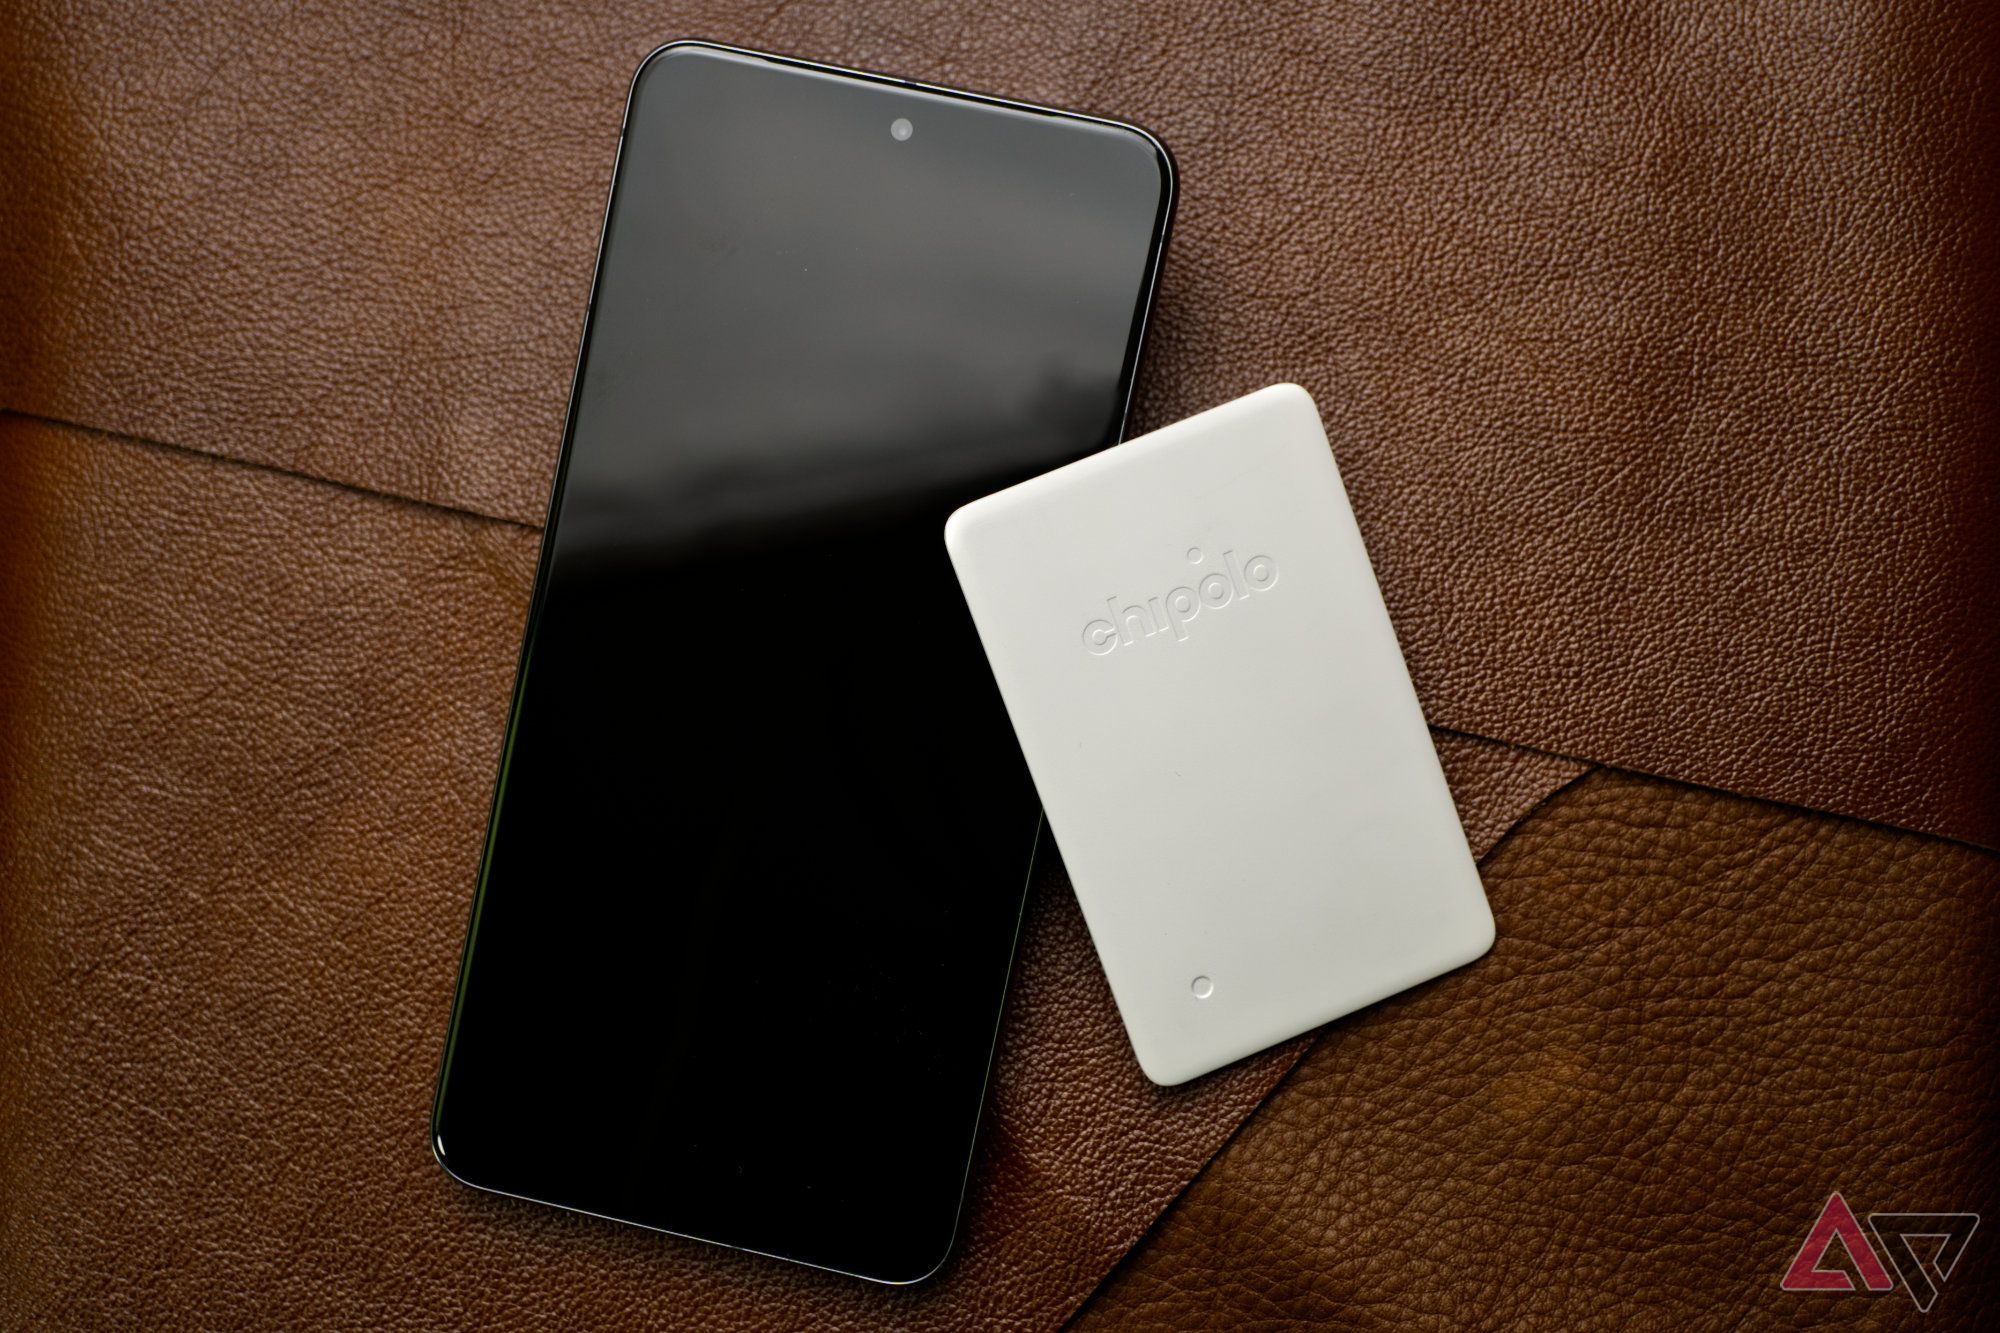 Chipolo CARD Point e um smartphone apoiado em folhas de couro marrom